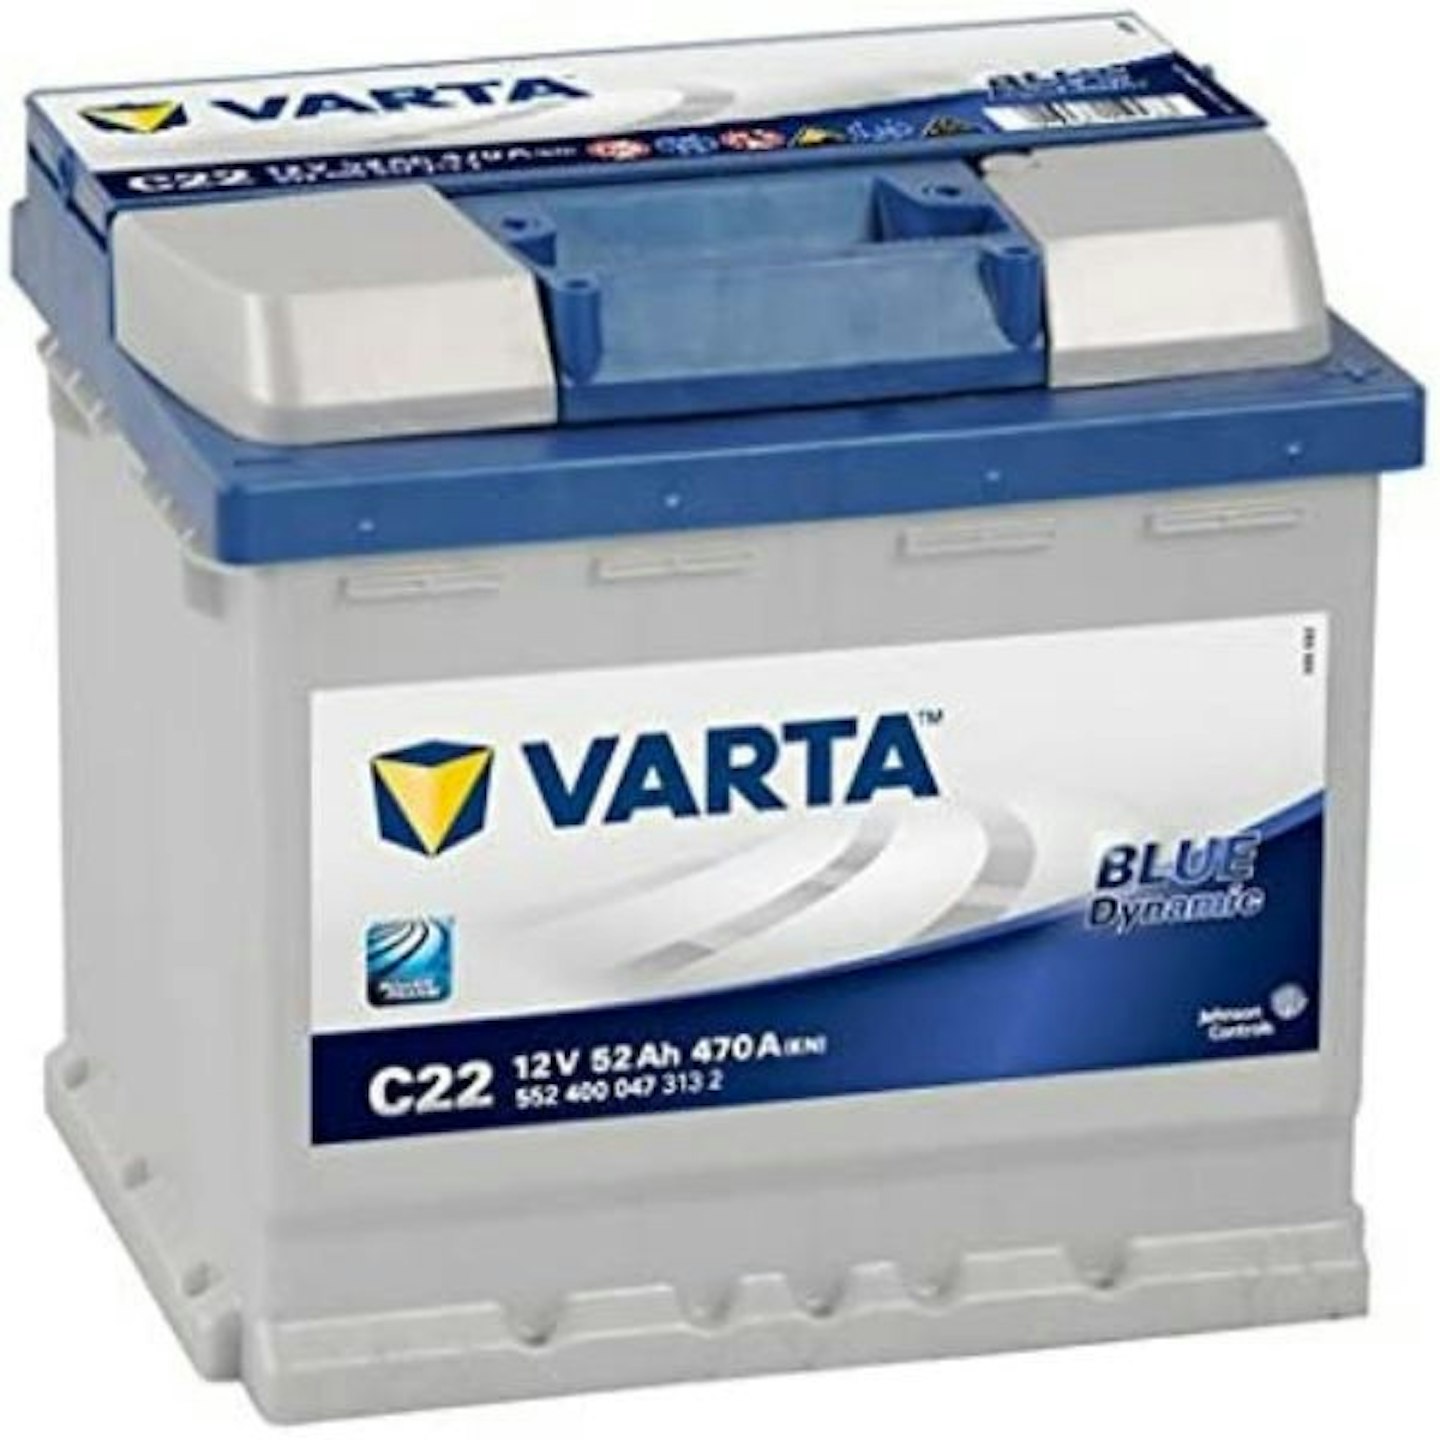 Varta Blue Dynamic C22 Car Battery